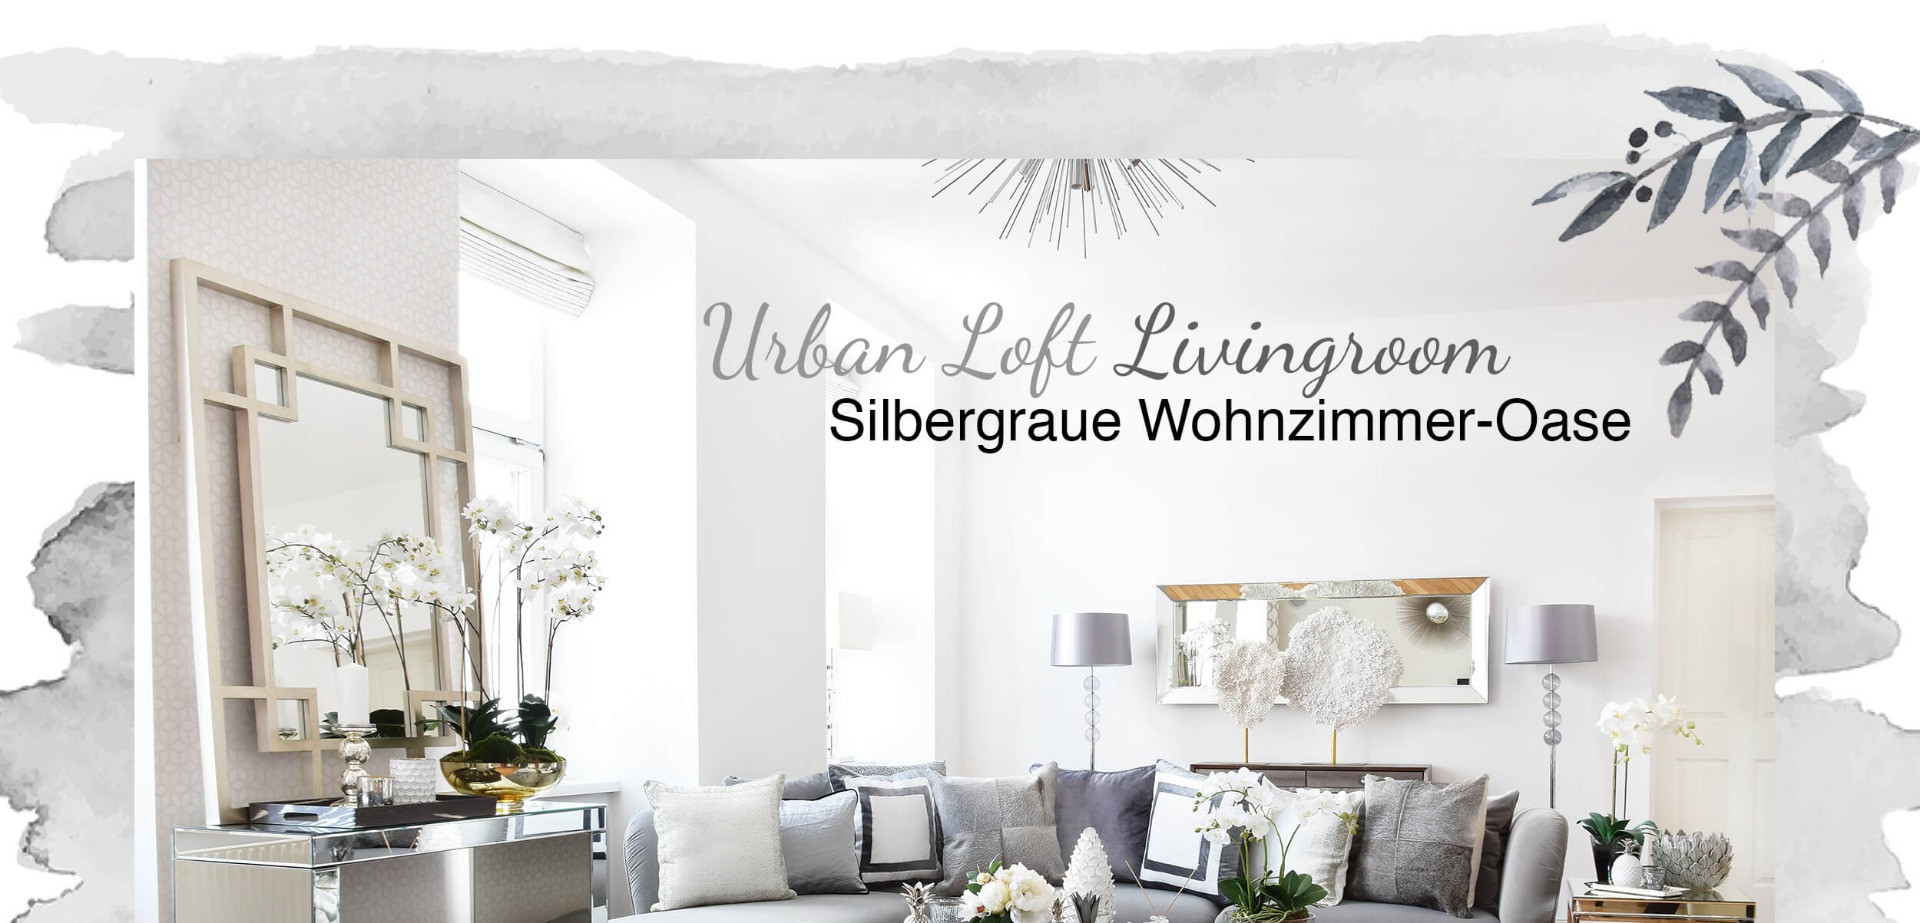 Urban Loft Livingroom - Wohnzimmer In Silber &amp; Grau - Looks regarding Wohnzimmer Deko Silber